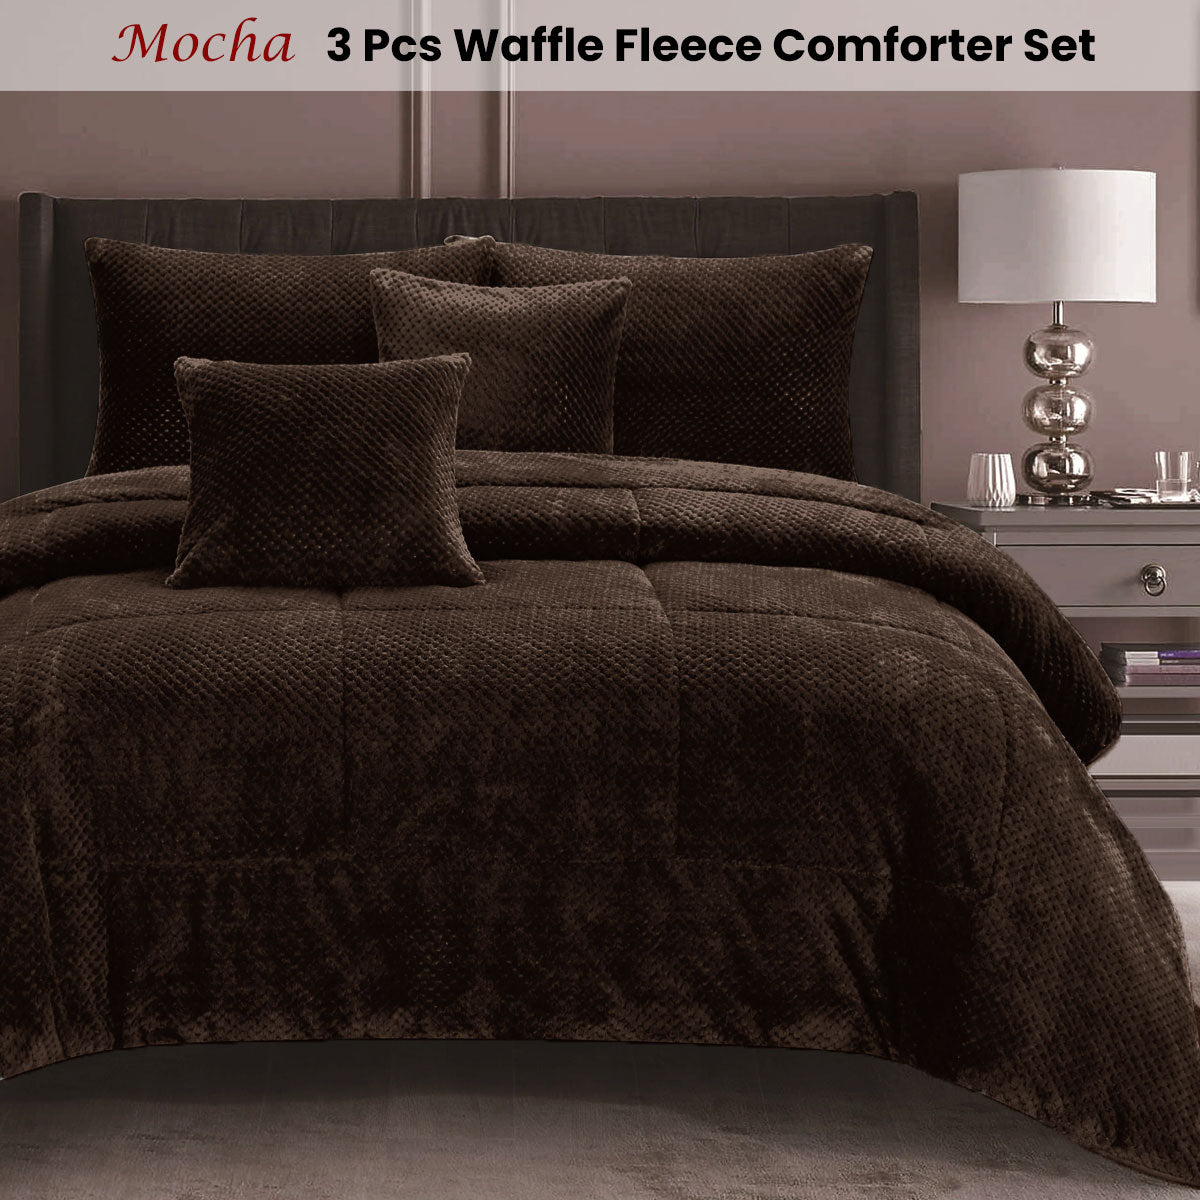 Ramesses Waffle Fleece Mocha 3 Pcs Comforter Set King